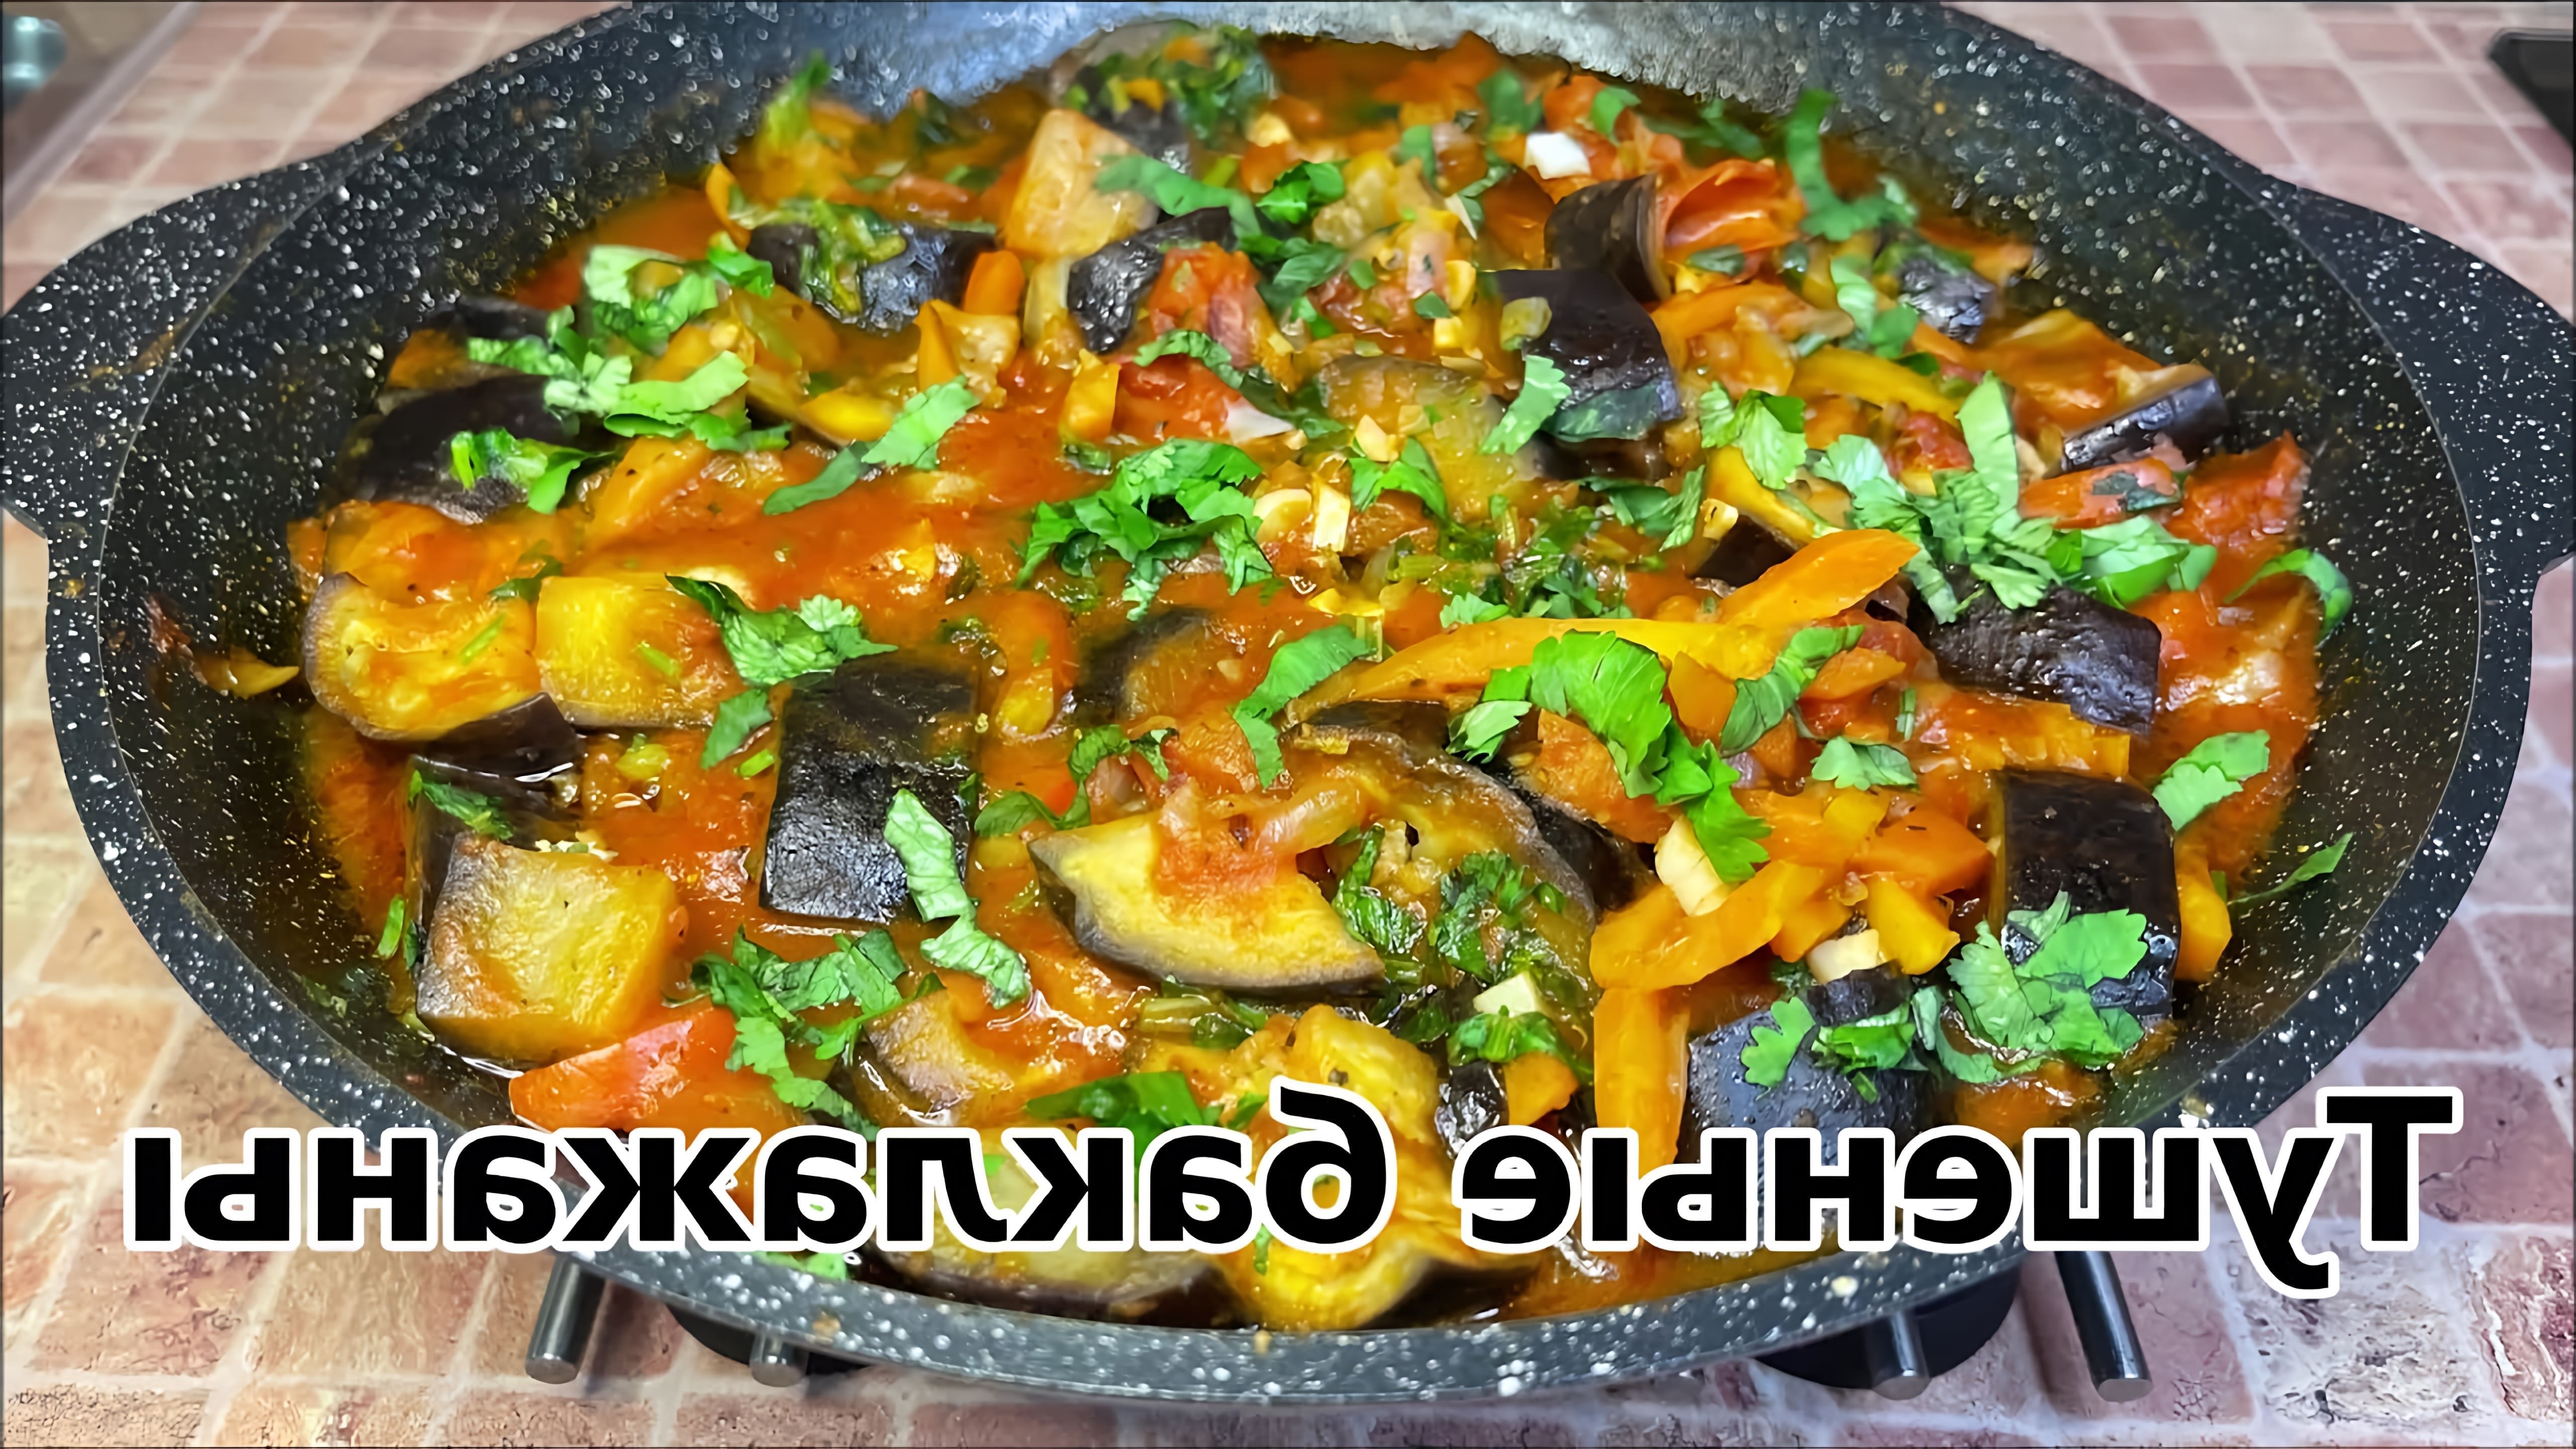 В этом видео демонстрируется процесс приготовления тушеных баклажанов с овощами на сковороде